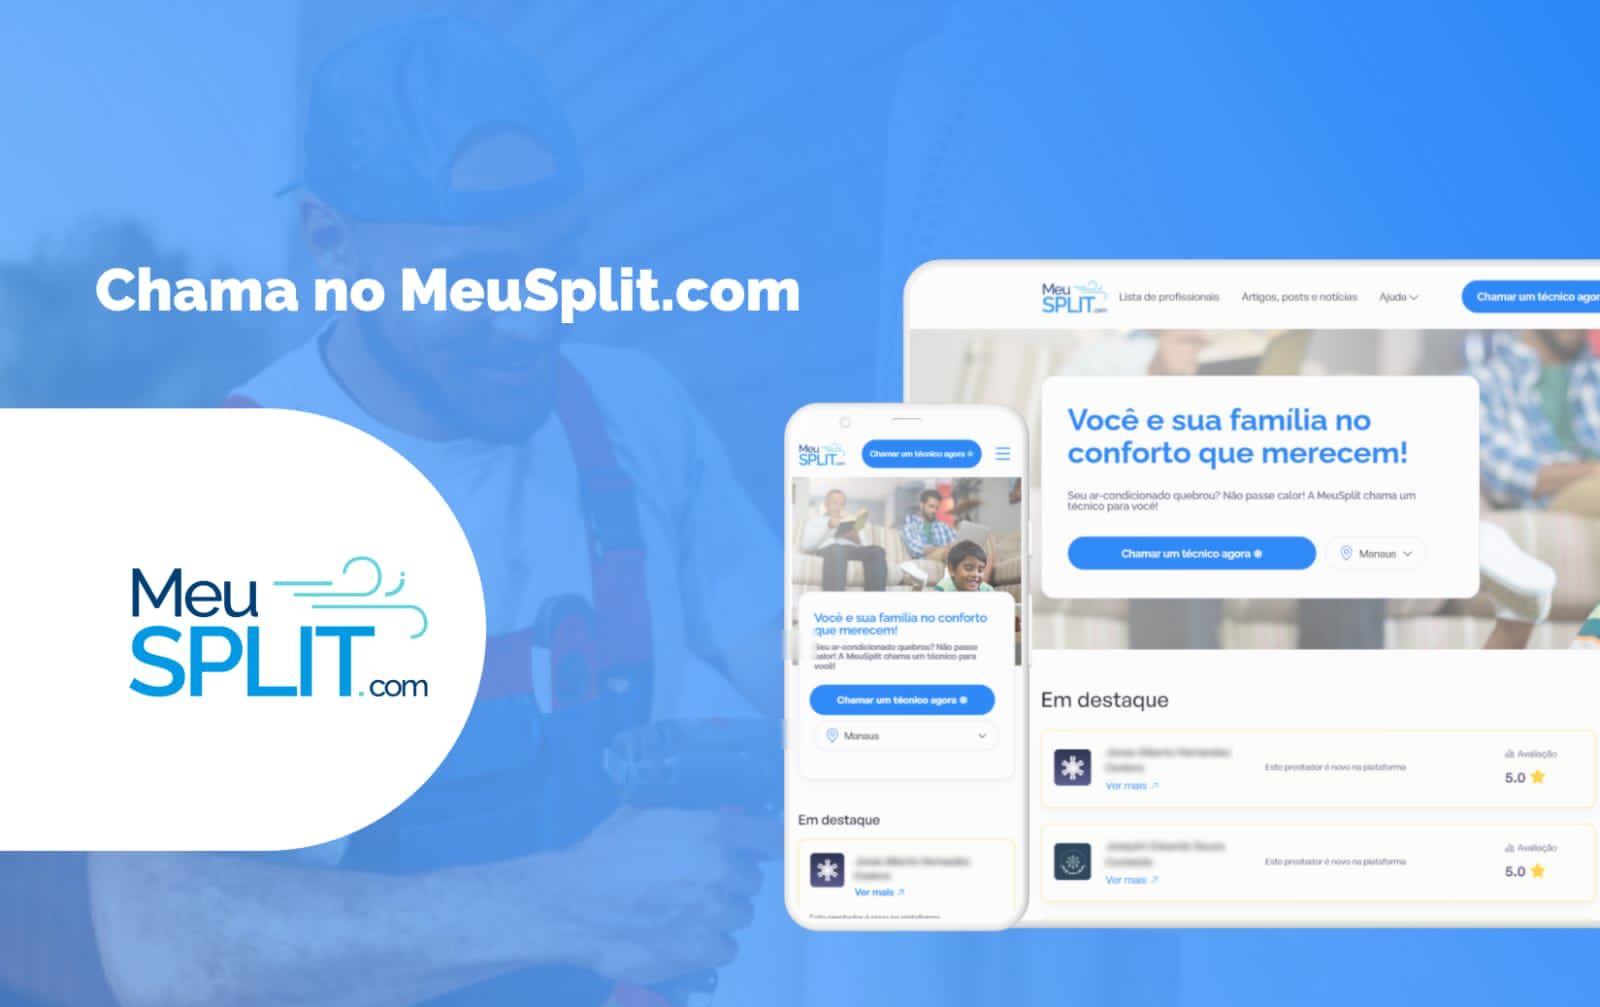 MeuSplit.com oferece serviços de limpeza e manutenção em ar-condicionado